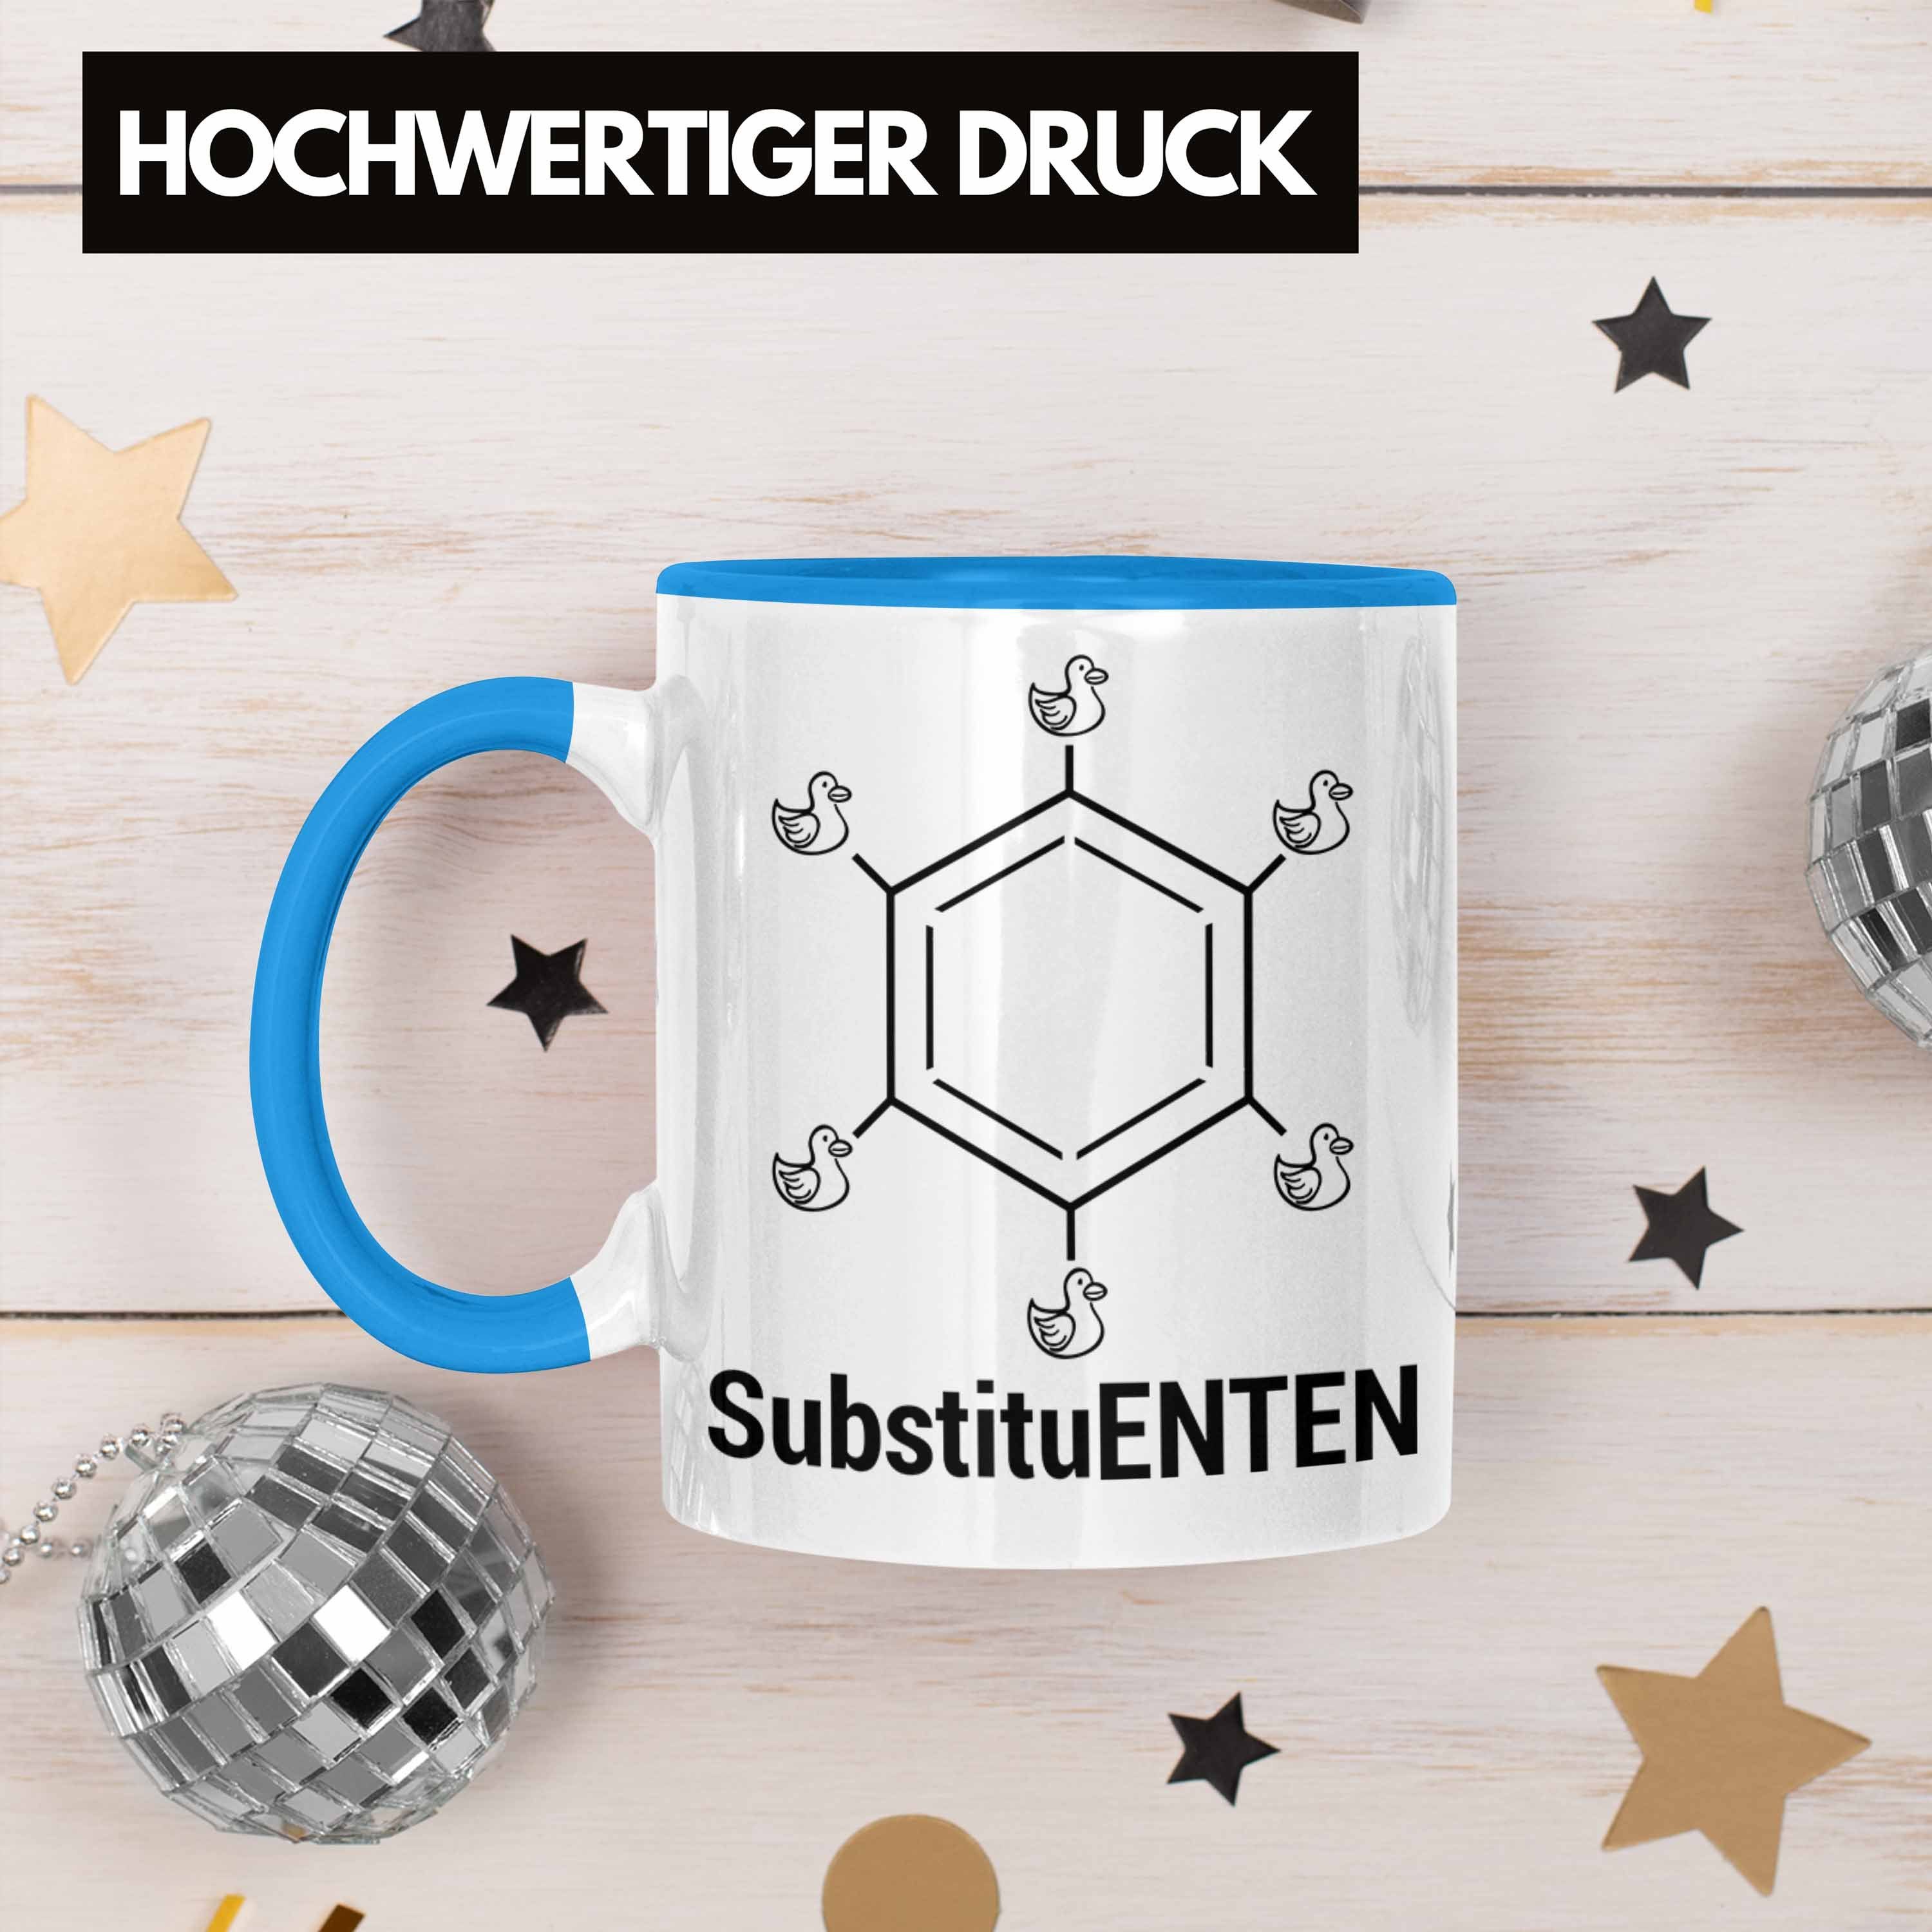 Trendation Tasse Chemie Tasse SubstituENTEN Ente Witz Kaffee Chemiker Chemie Organische Blau